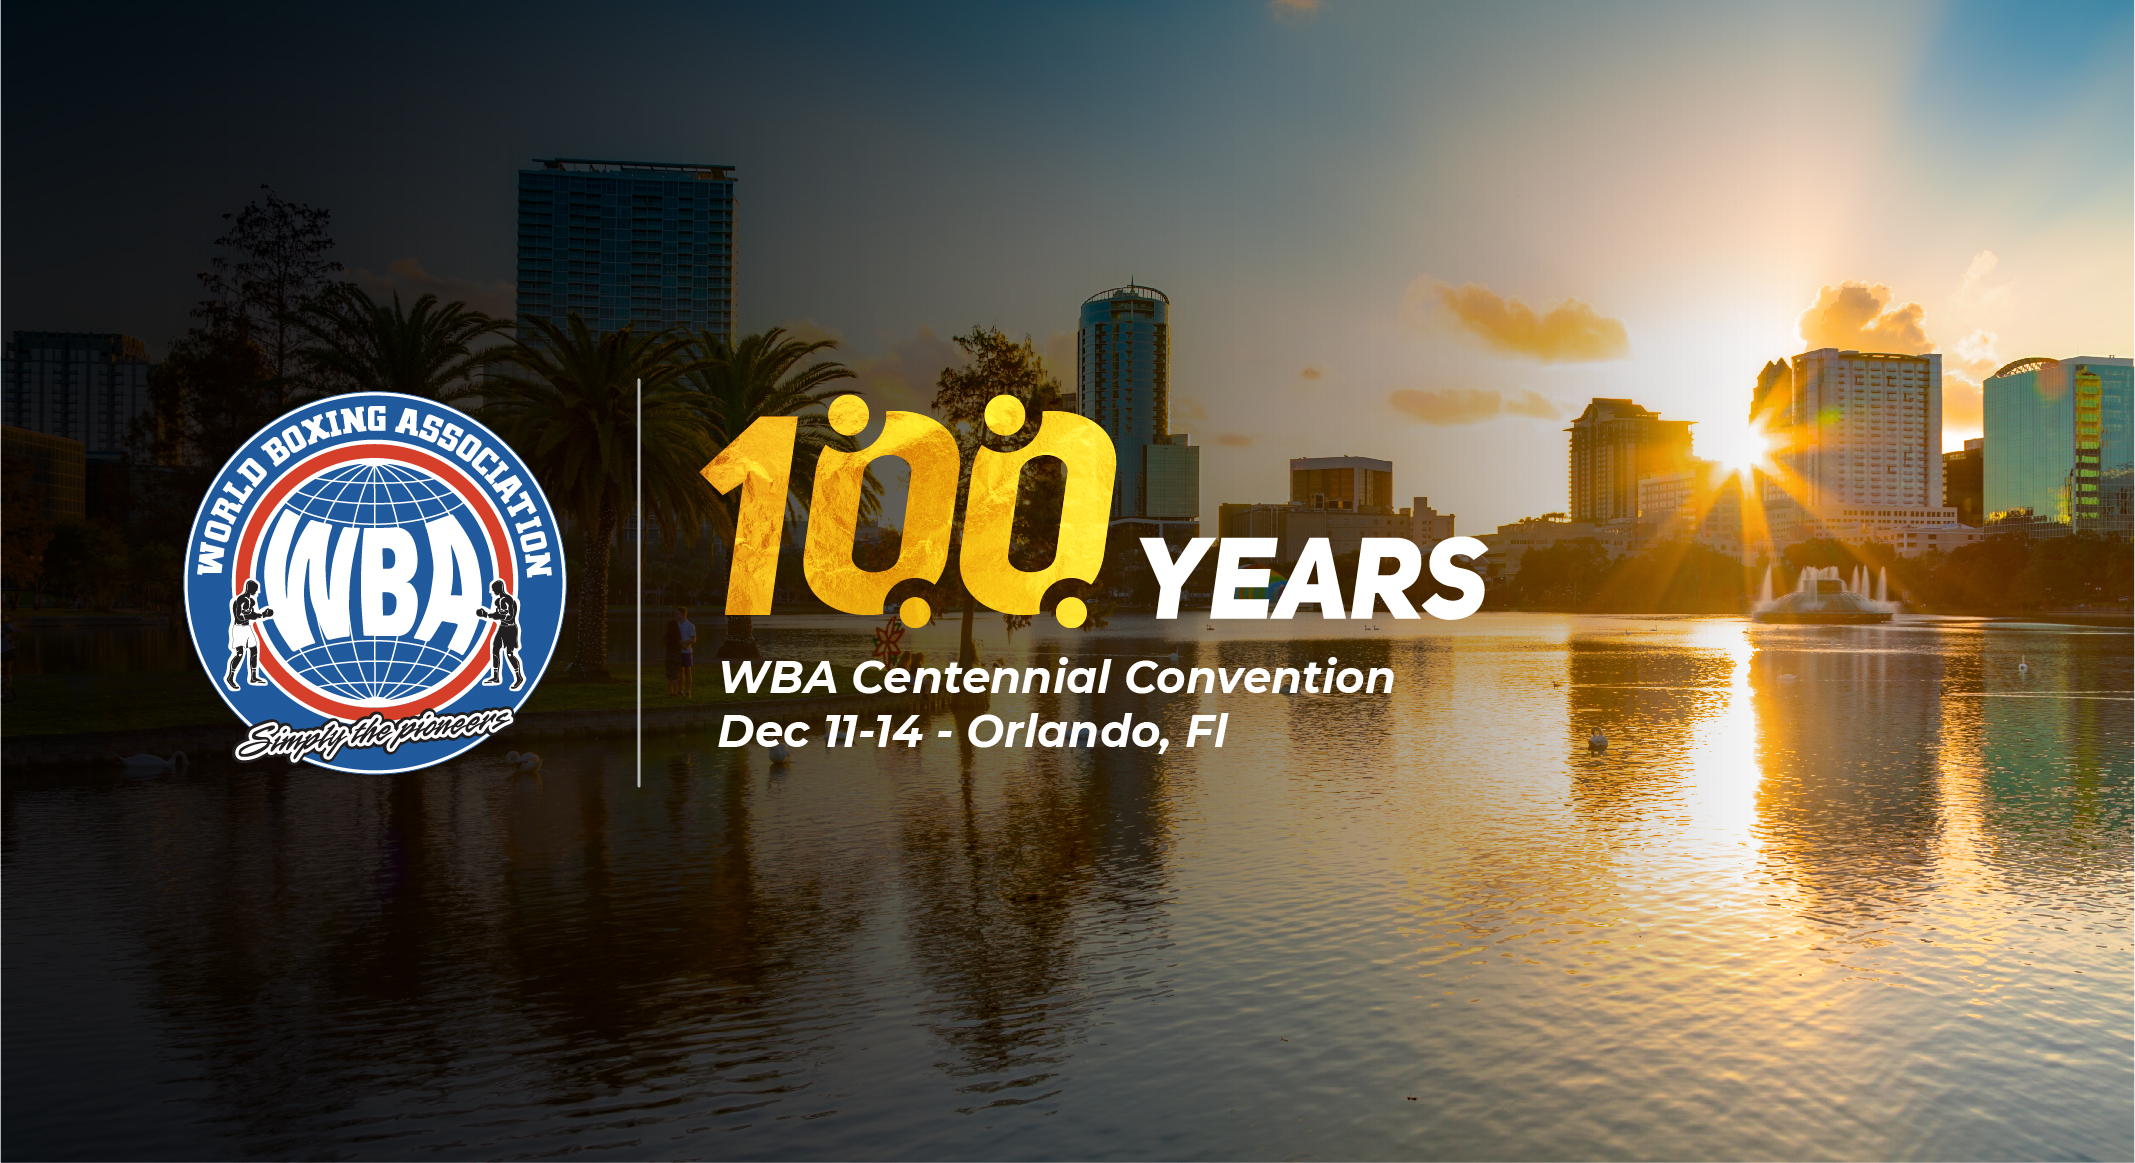 WBA Centennial Convention will be December 11-14 in Orlando, Florida 